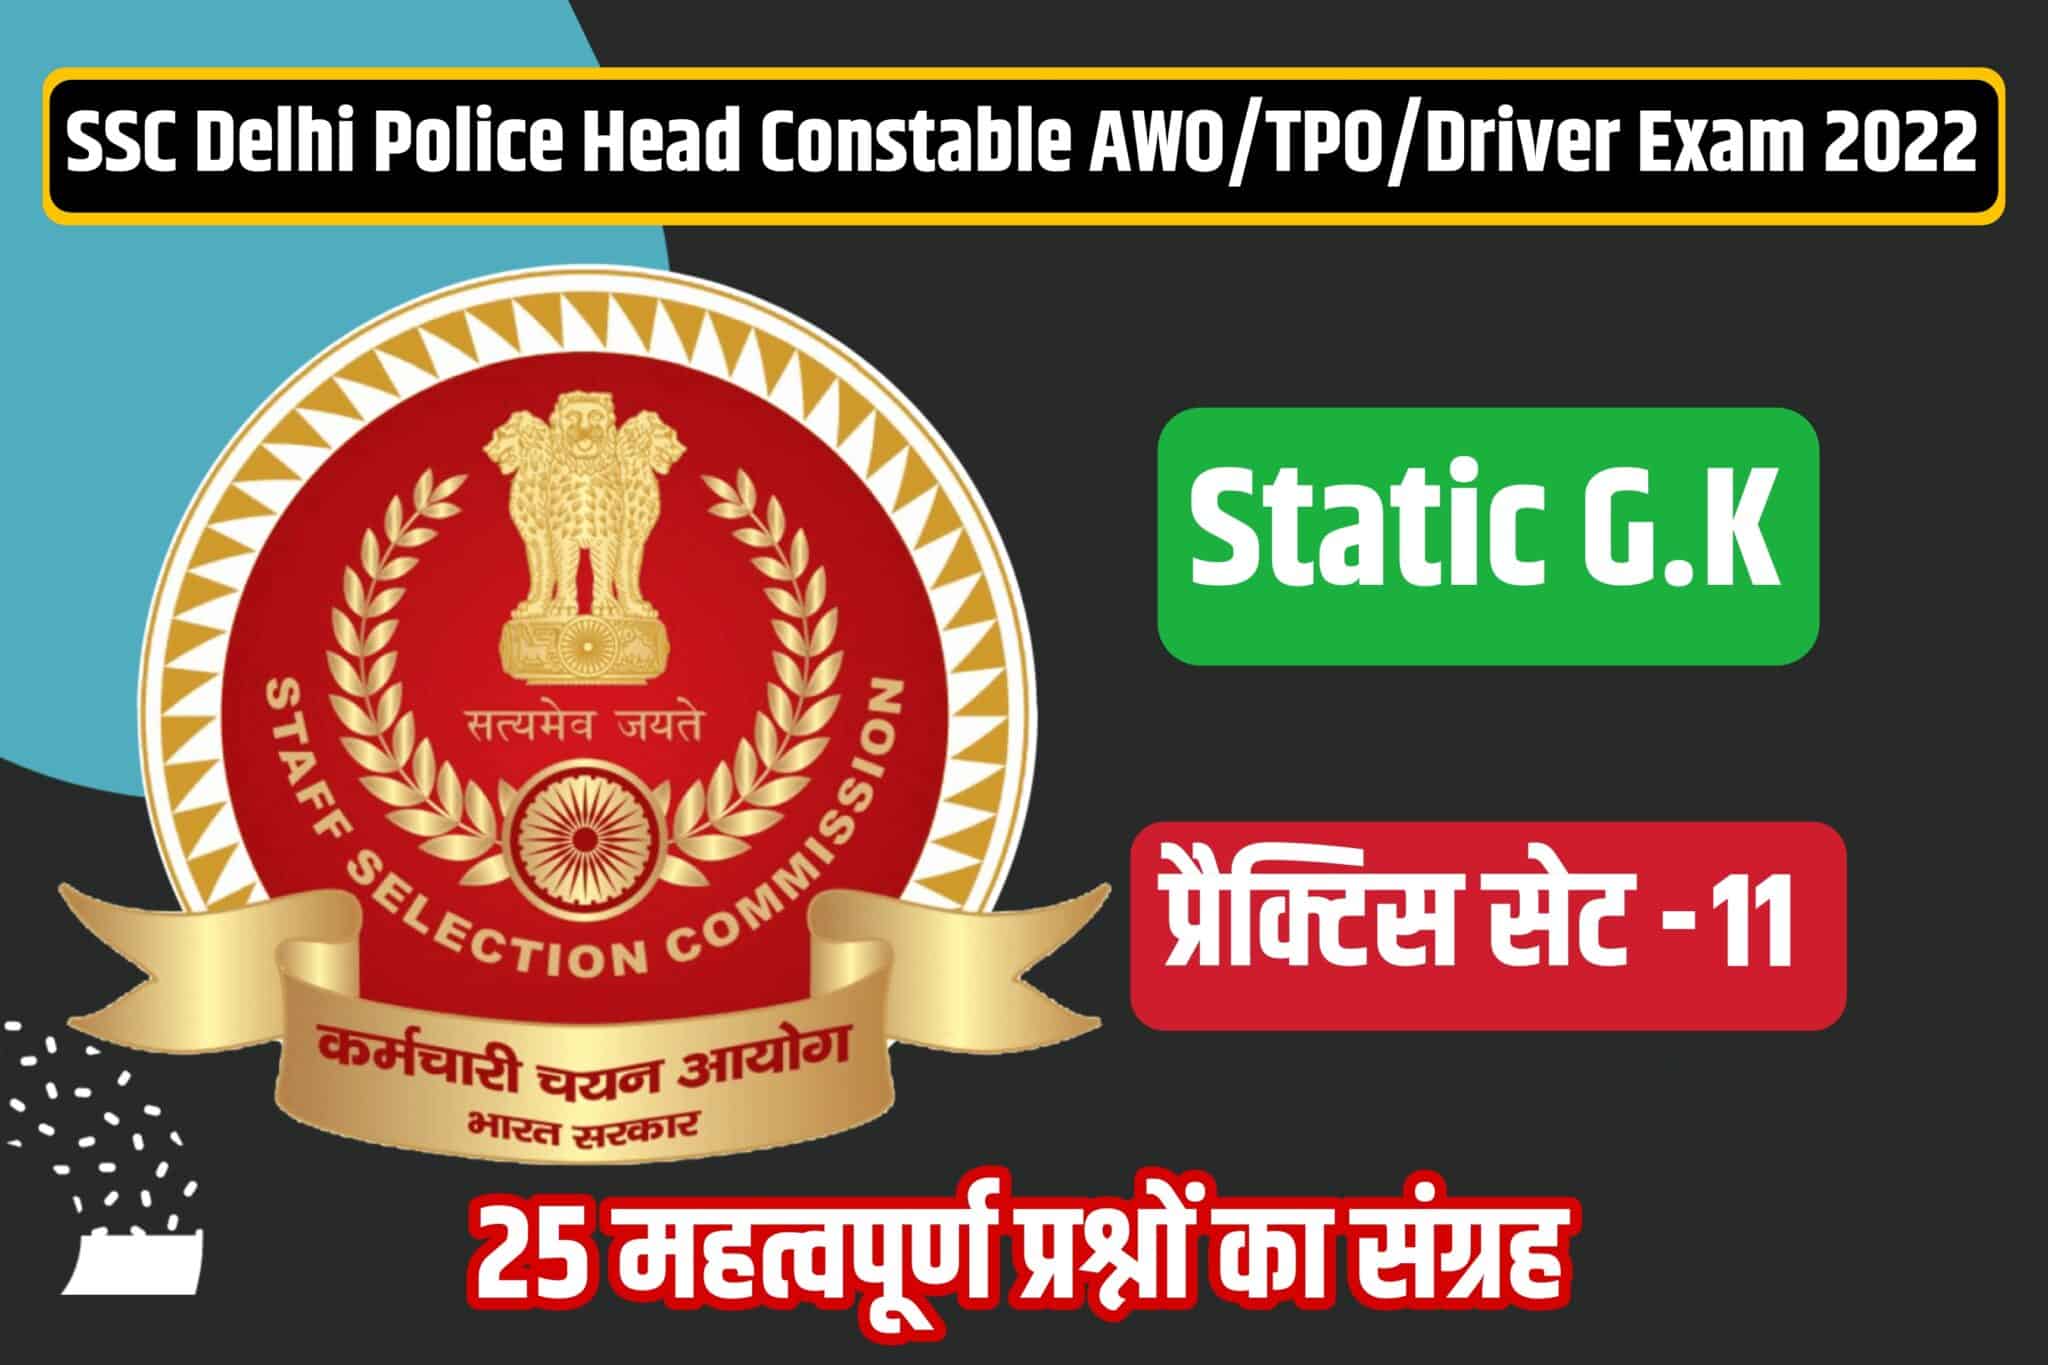 SSC Delhi Police Head Constable /AWO/TPO/Driver Static GK Practice Set 11 | परीक्षा में शामिल होने से पूर्व अवश्य पढ़ लें ये महत्वपूर्ण प्रश्न